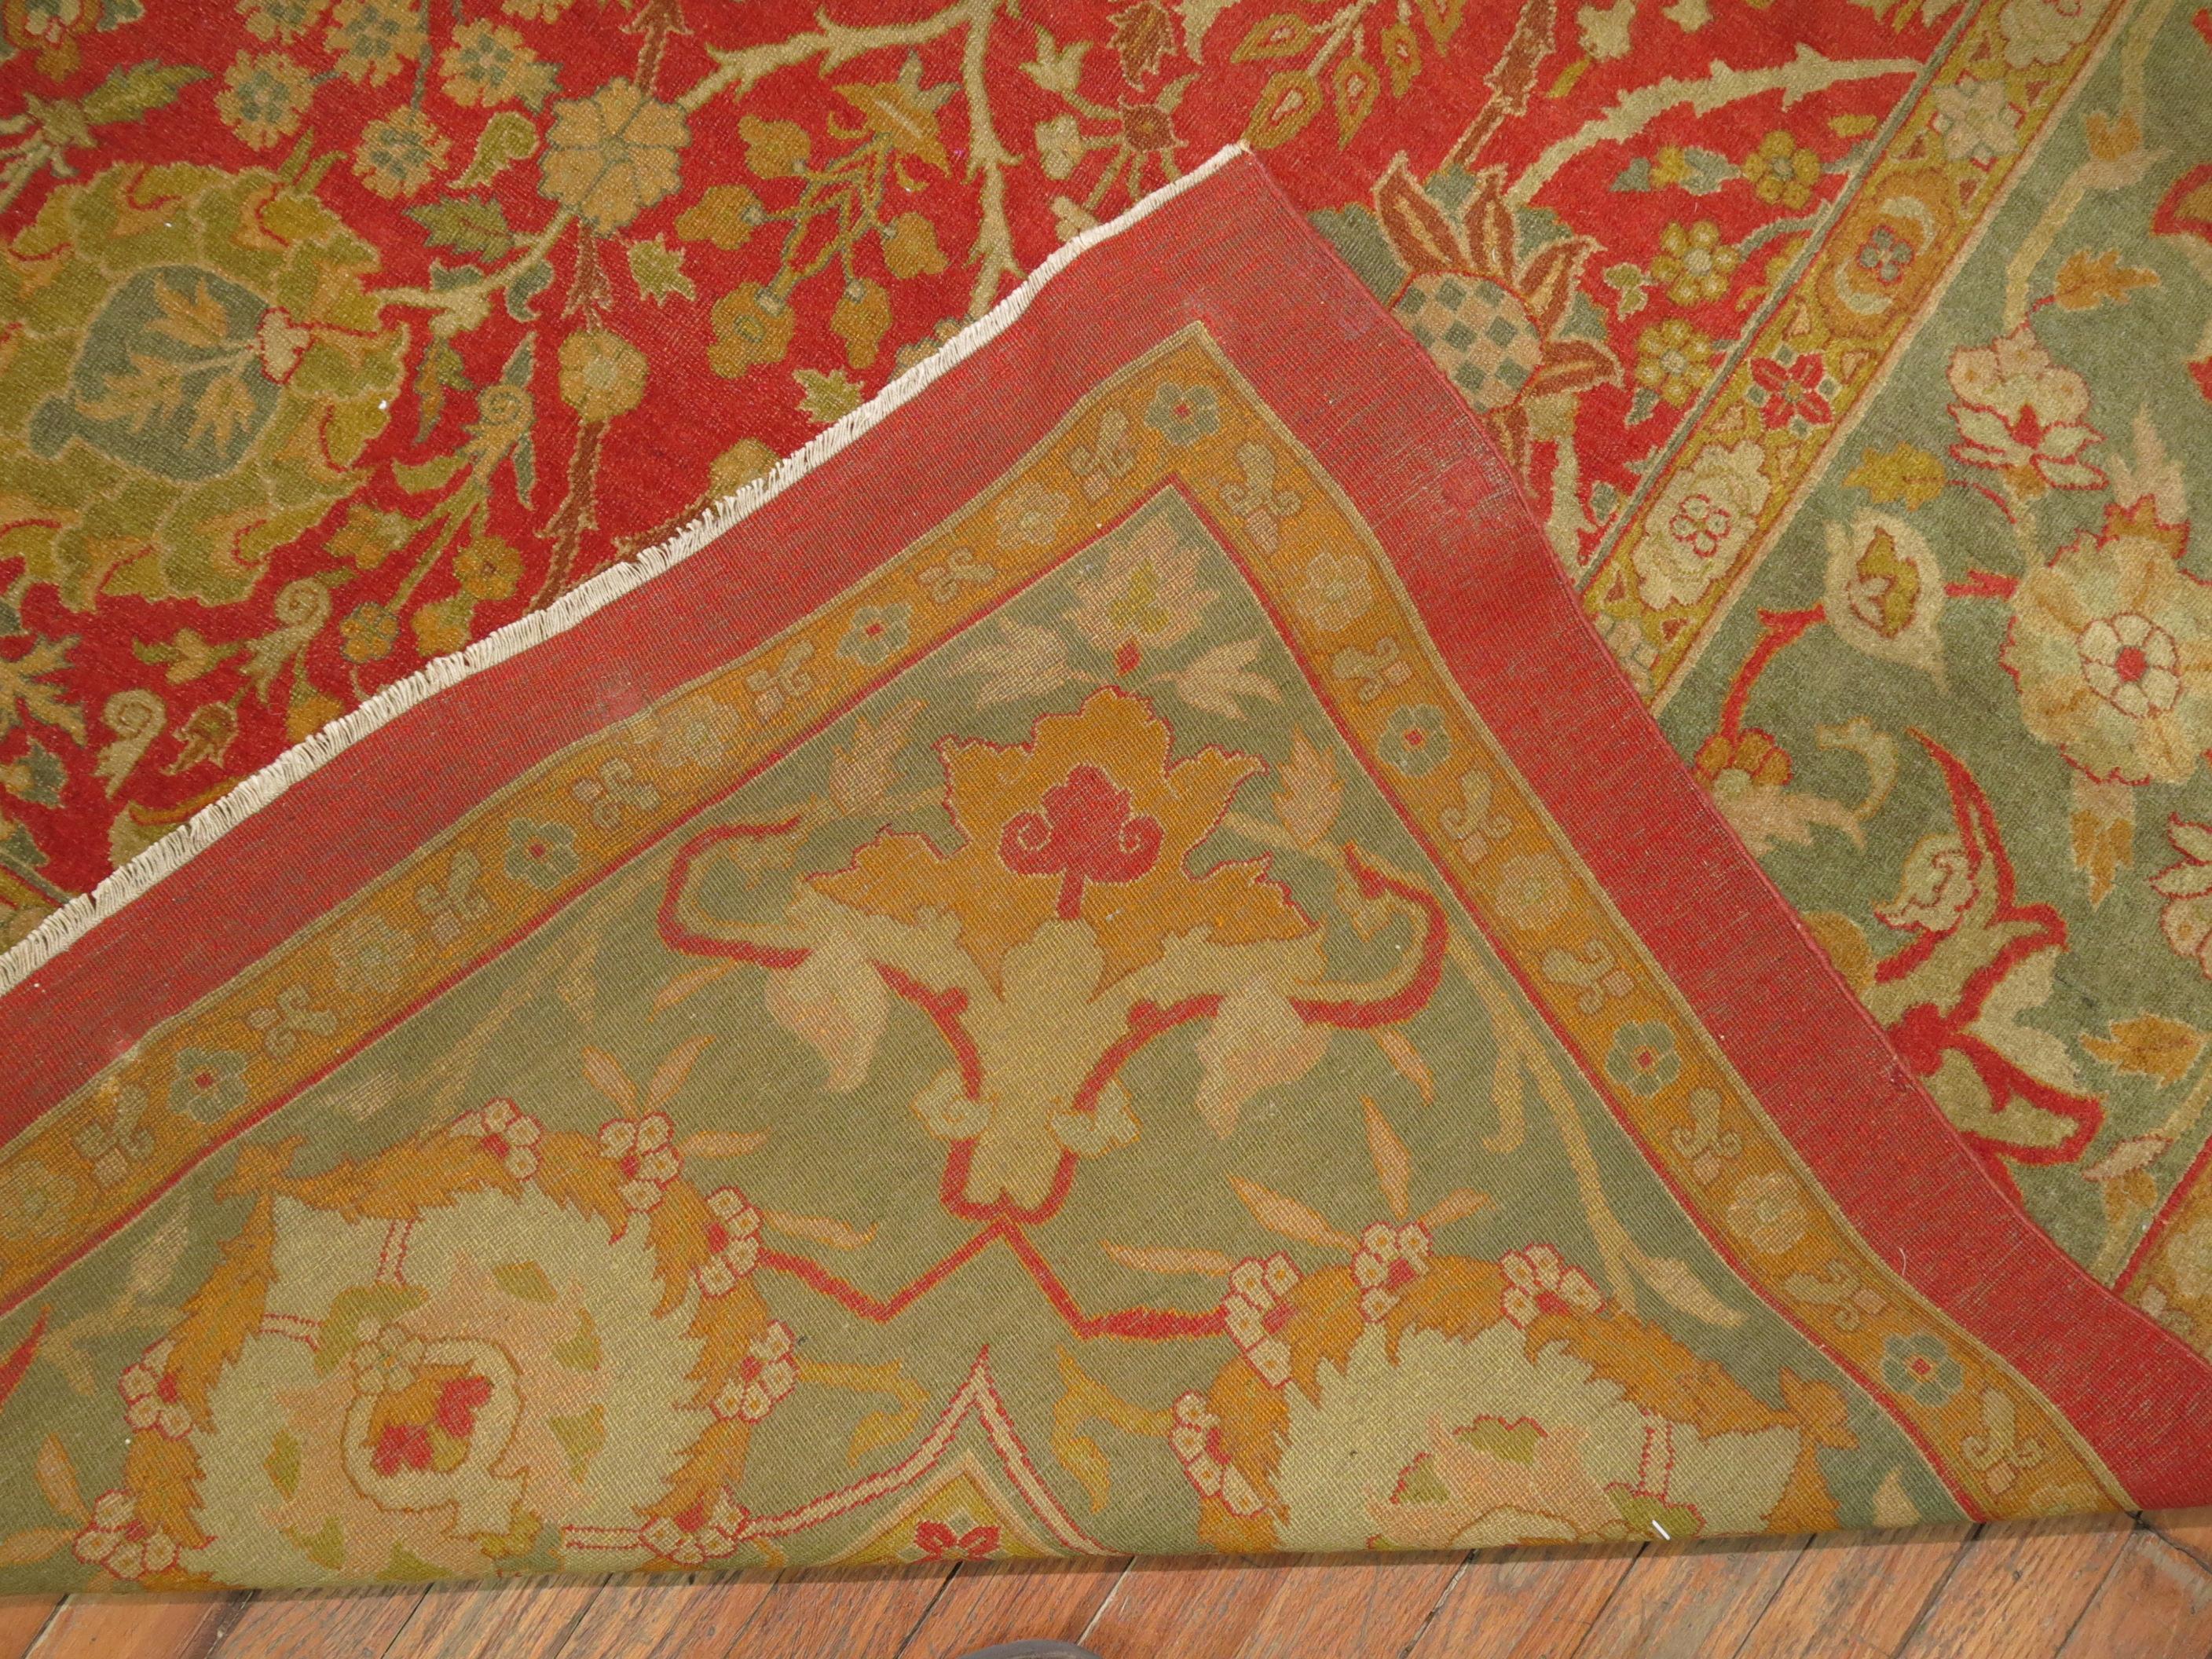 Exquis tapis Agra ancien du 19ème siècle en parfait état, aux couleurs riches et harmonieuses.

Un groupe d'élite des plus beaux tapis de la région d'Agra du 19ème siècle est attribué à la ville d'Amritsar. Ils sont connus pour leur artisanat